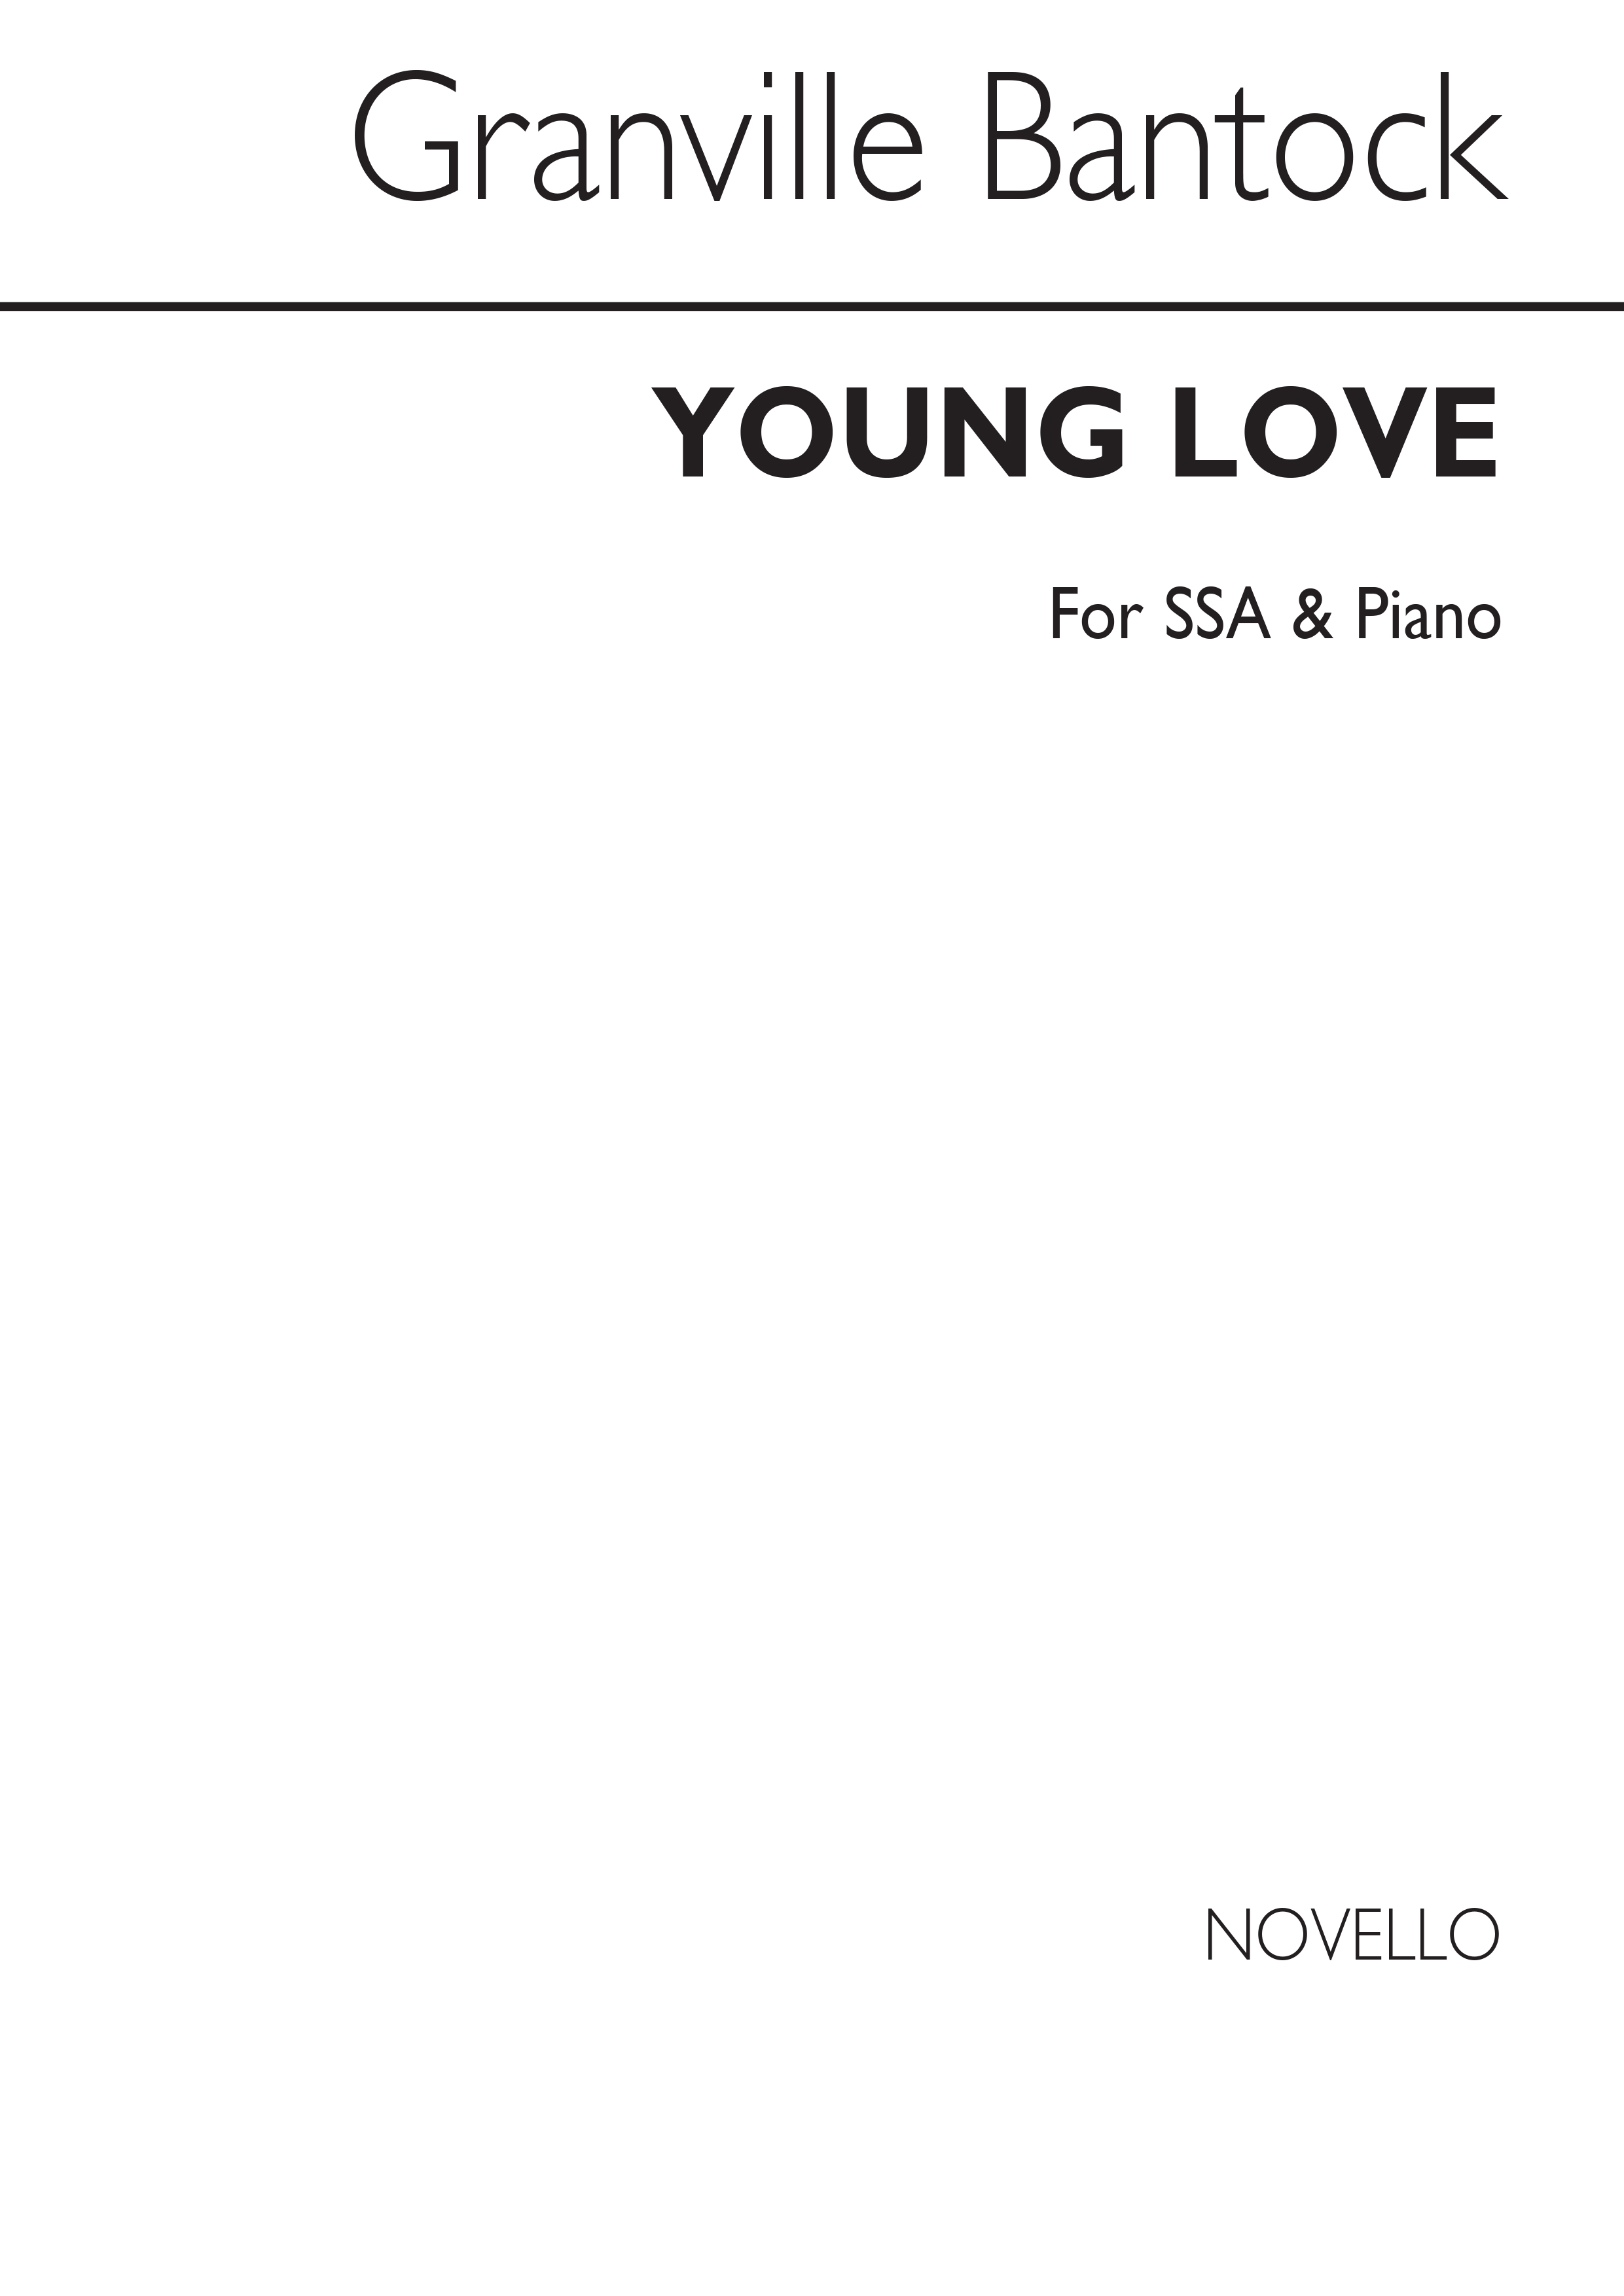 Granville Bantock: Young Love SSA/Piano